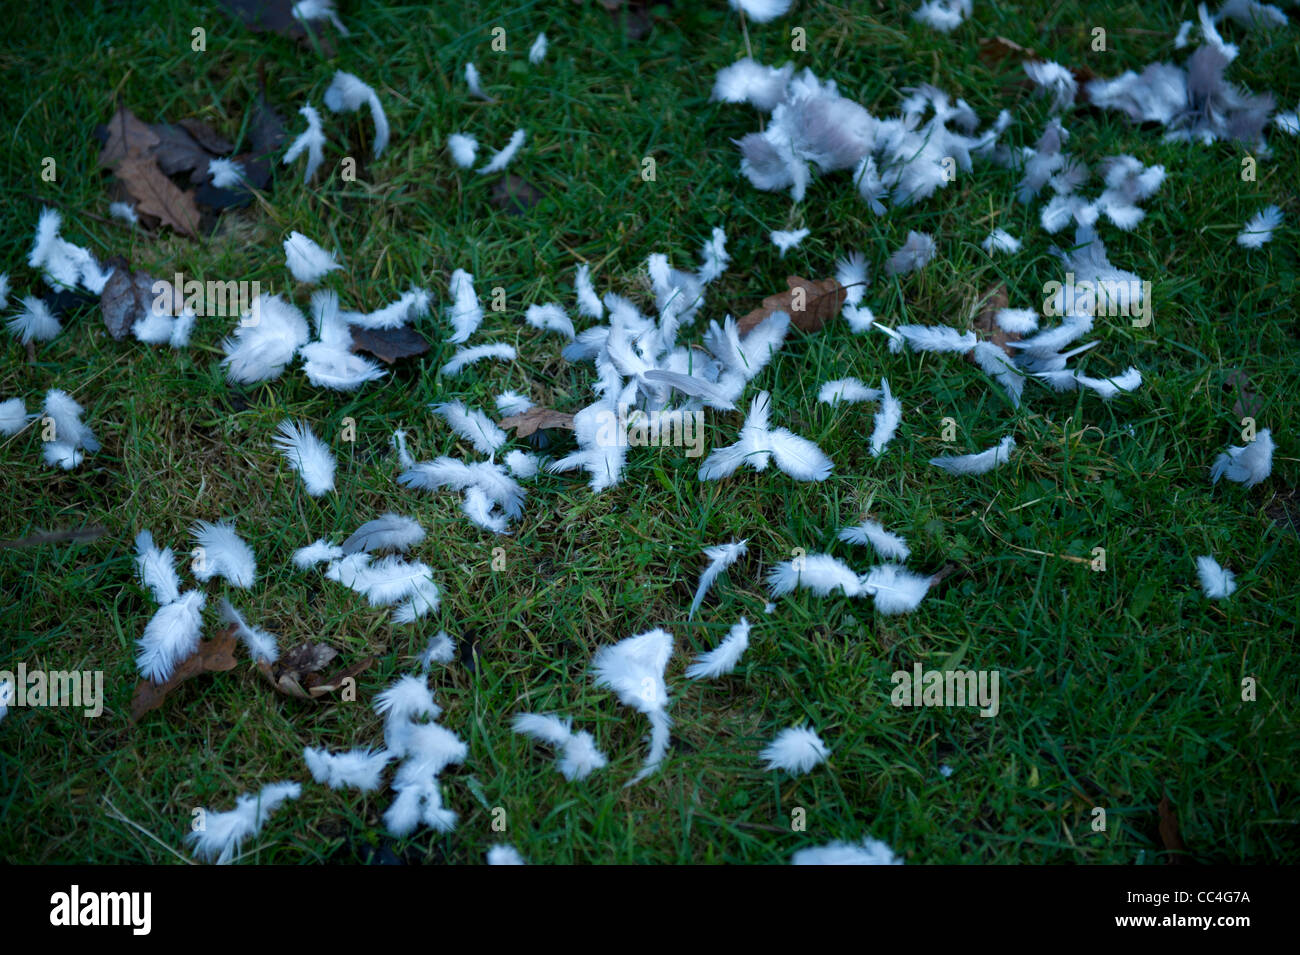 Les plumes des oiseaux blancs sur l'herbe Banque D'Images